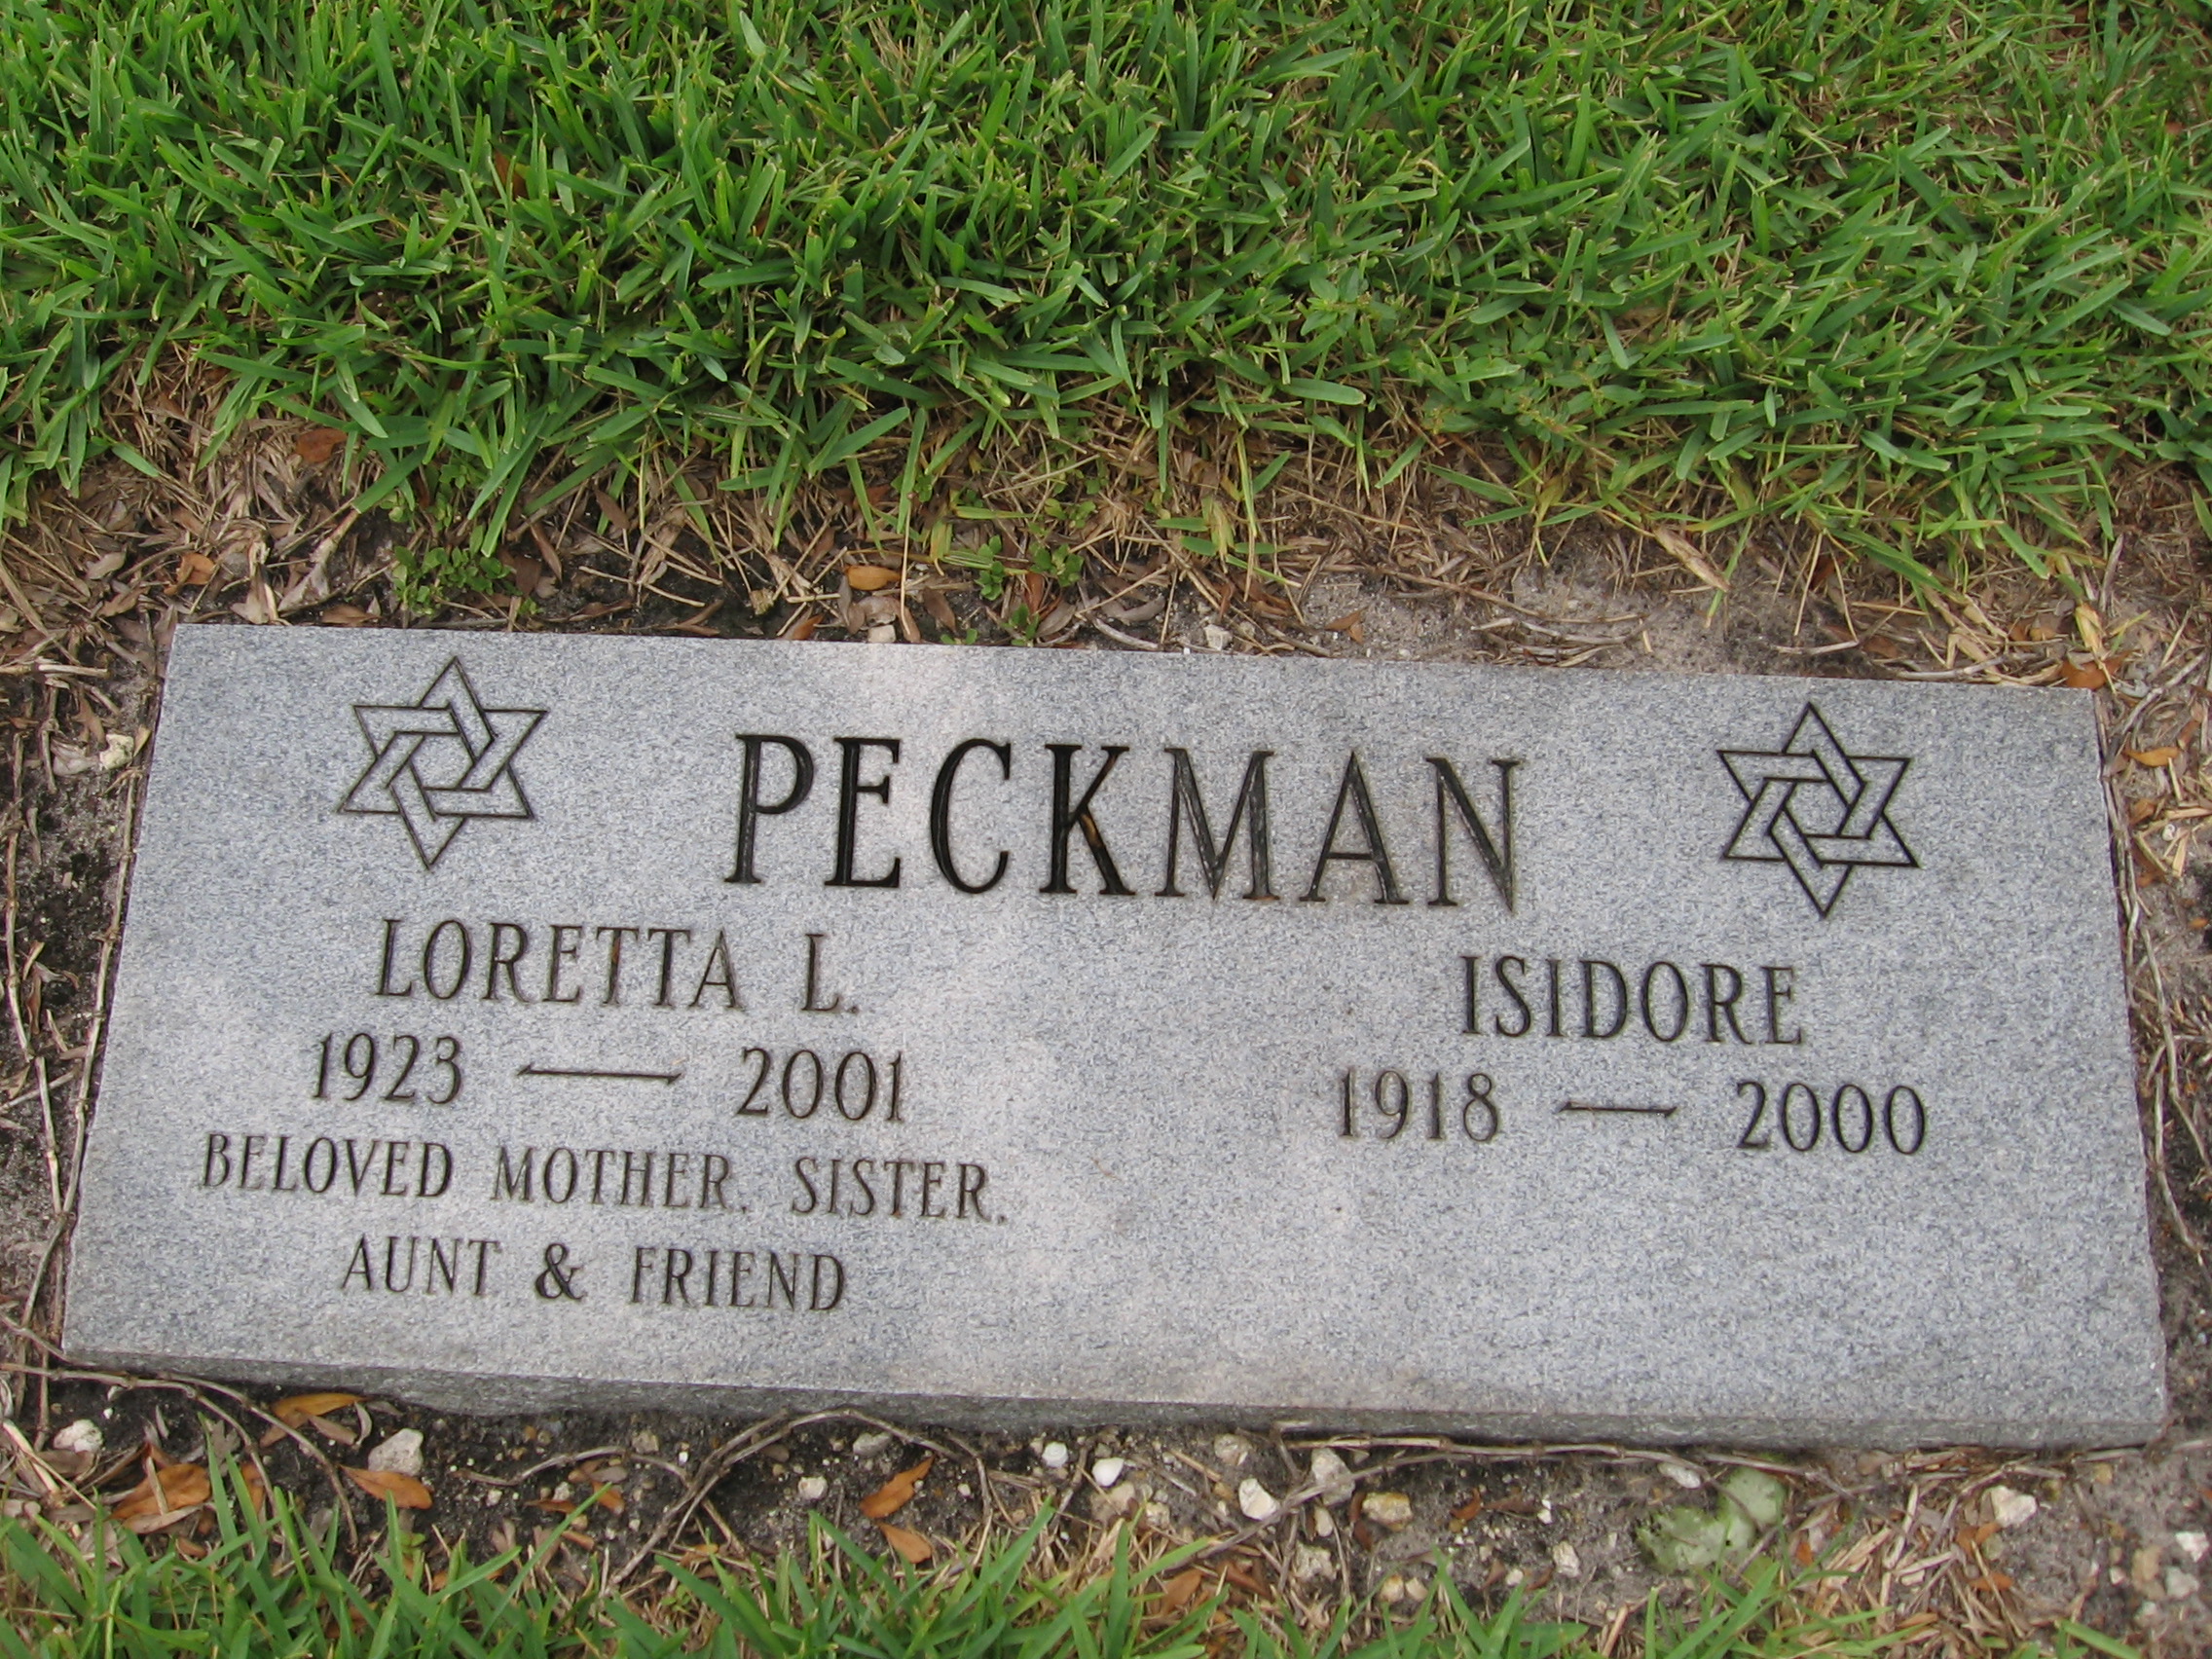 Isidore Peckman